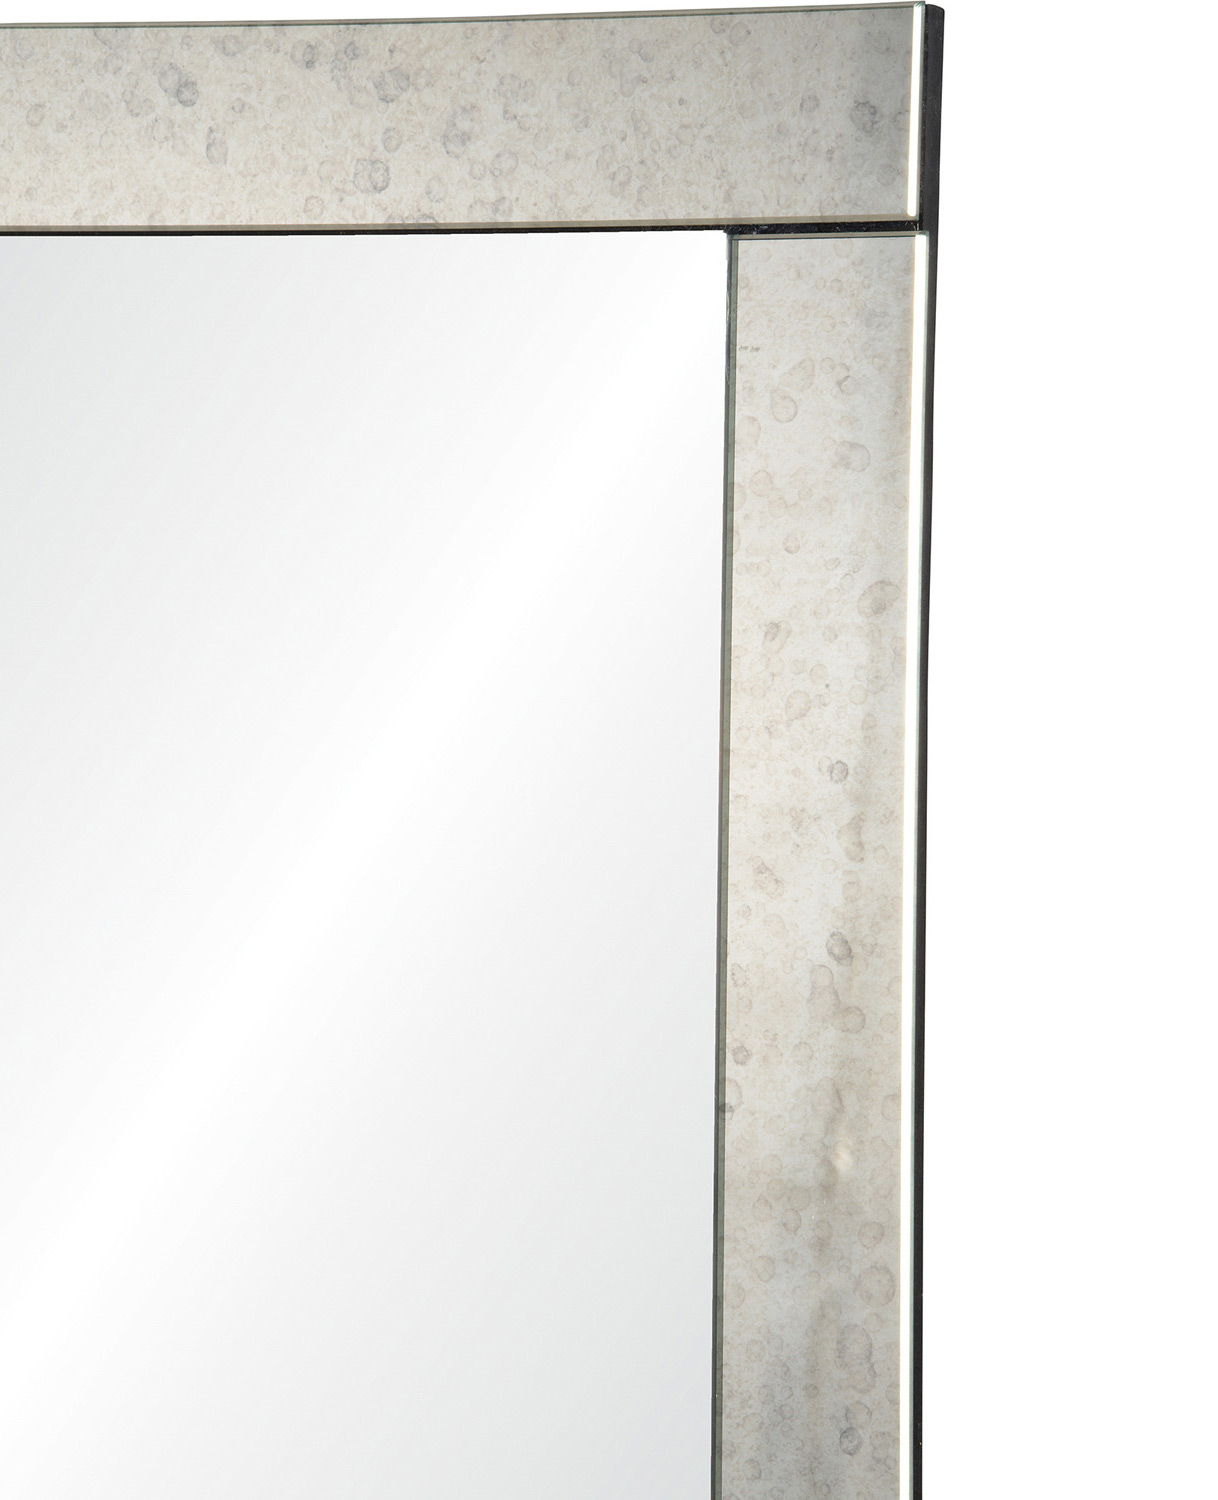 Ren-Wil Atara Rectangle Mirror - Antique mirror